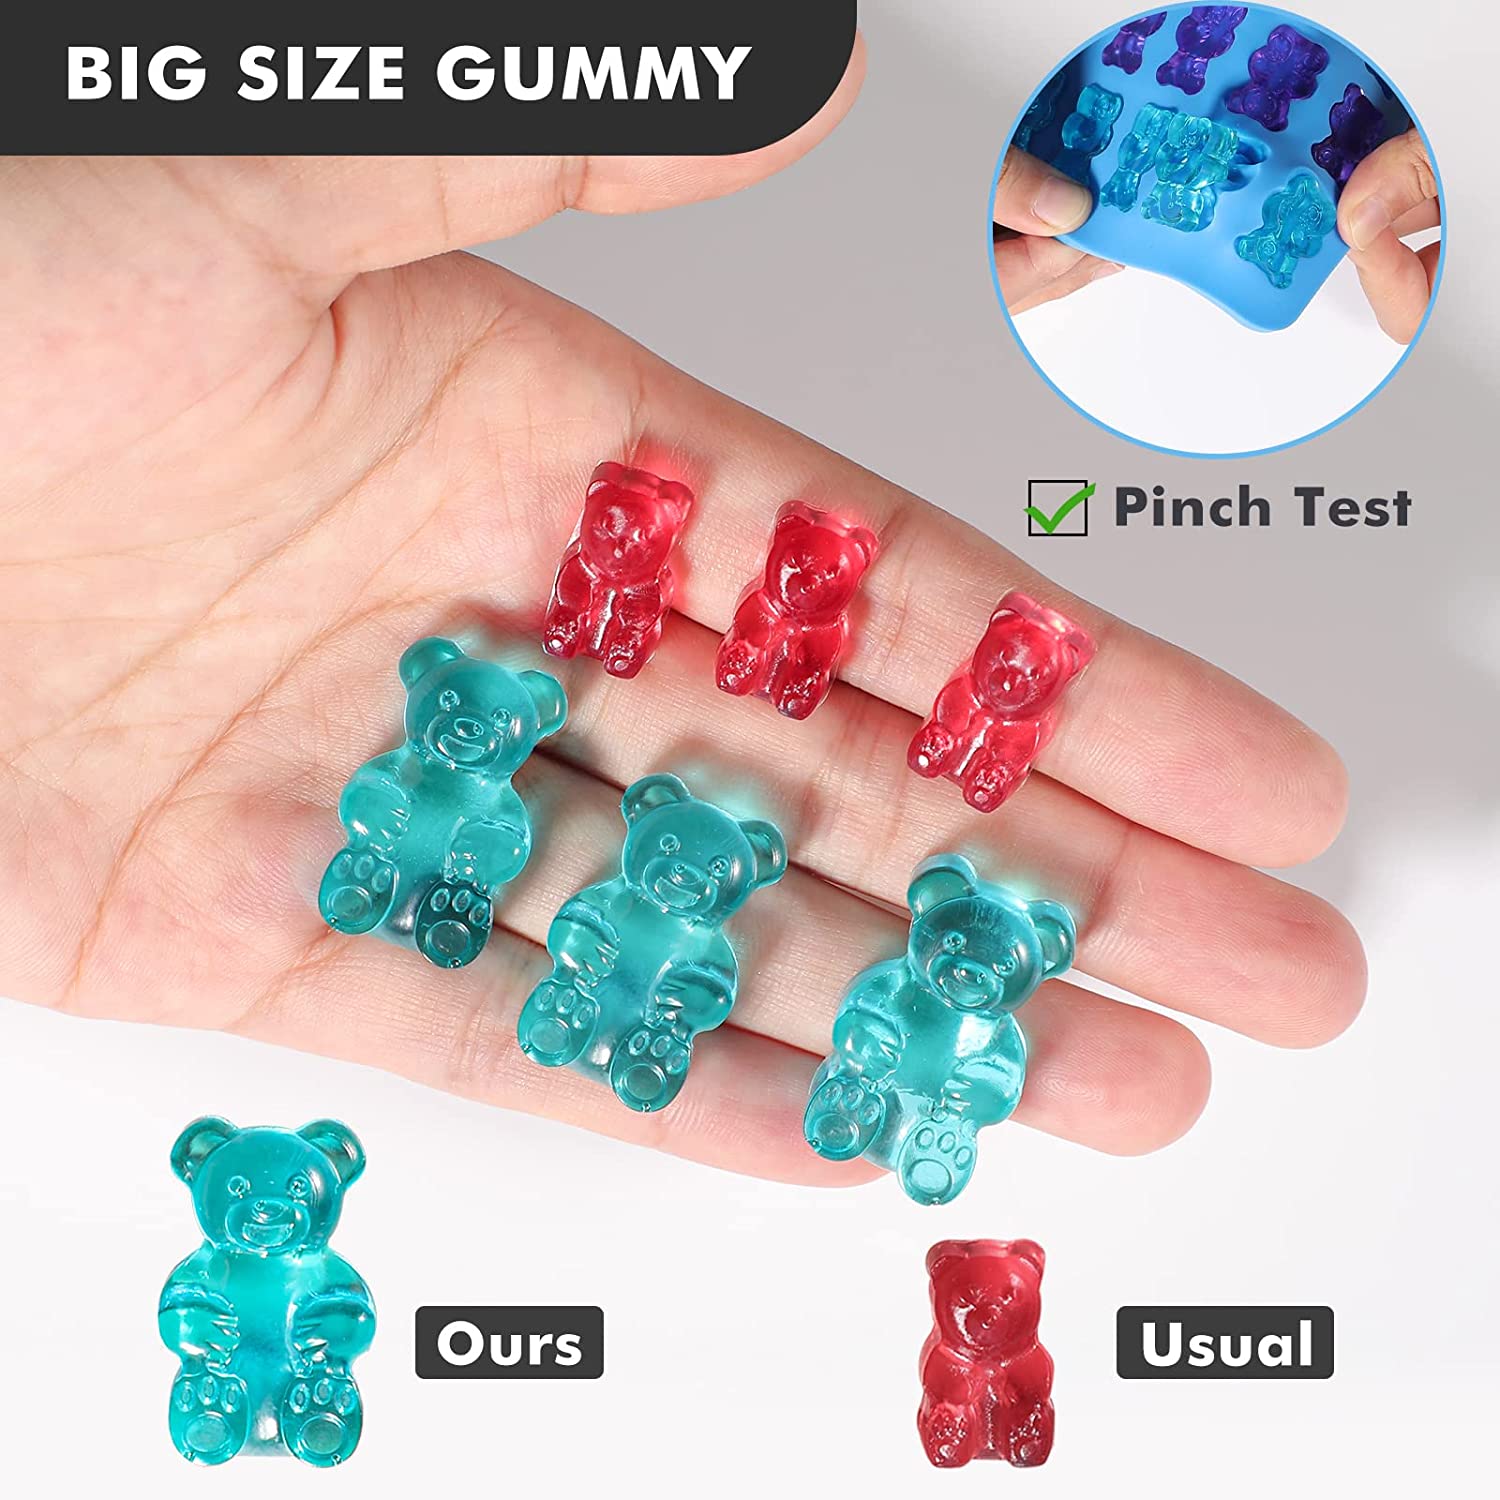 Big Gummy Bear Mold